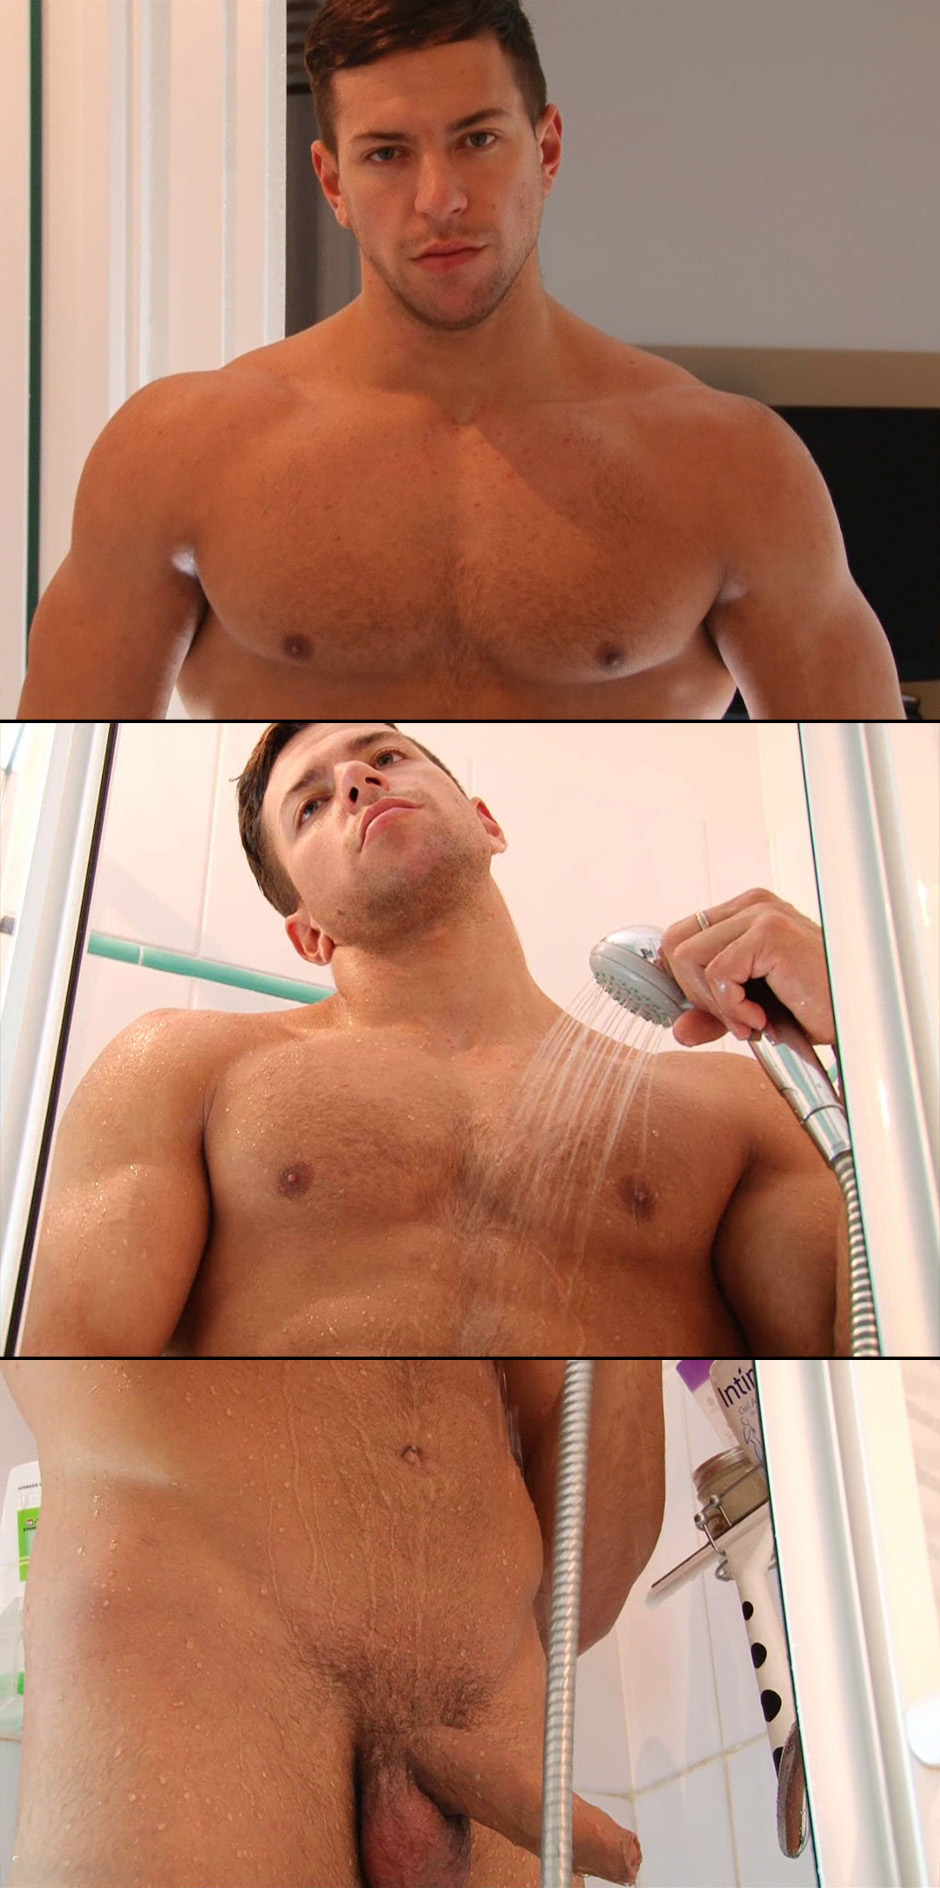 keumgay bryan shower jerk off uncut cock muscle stud guy body hairy hair trimmed (123)